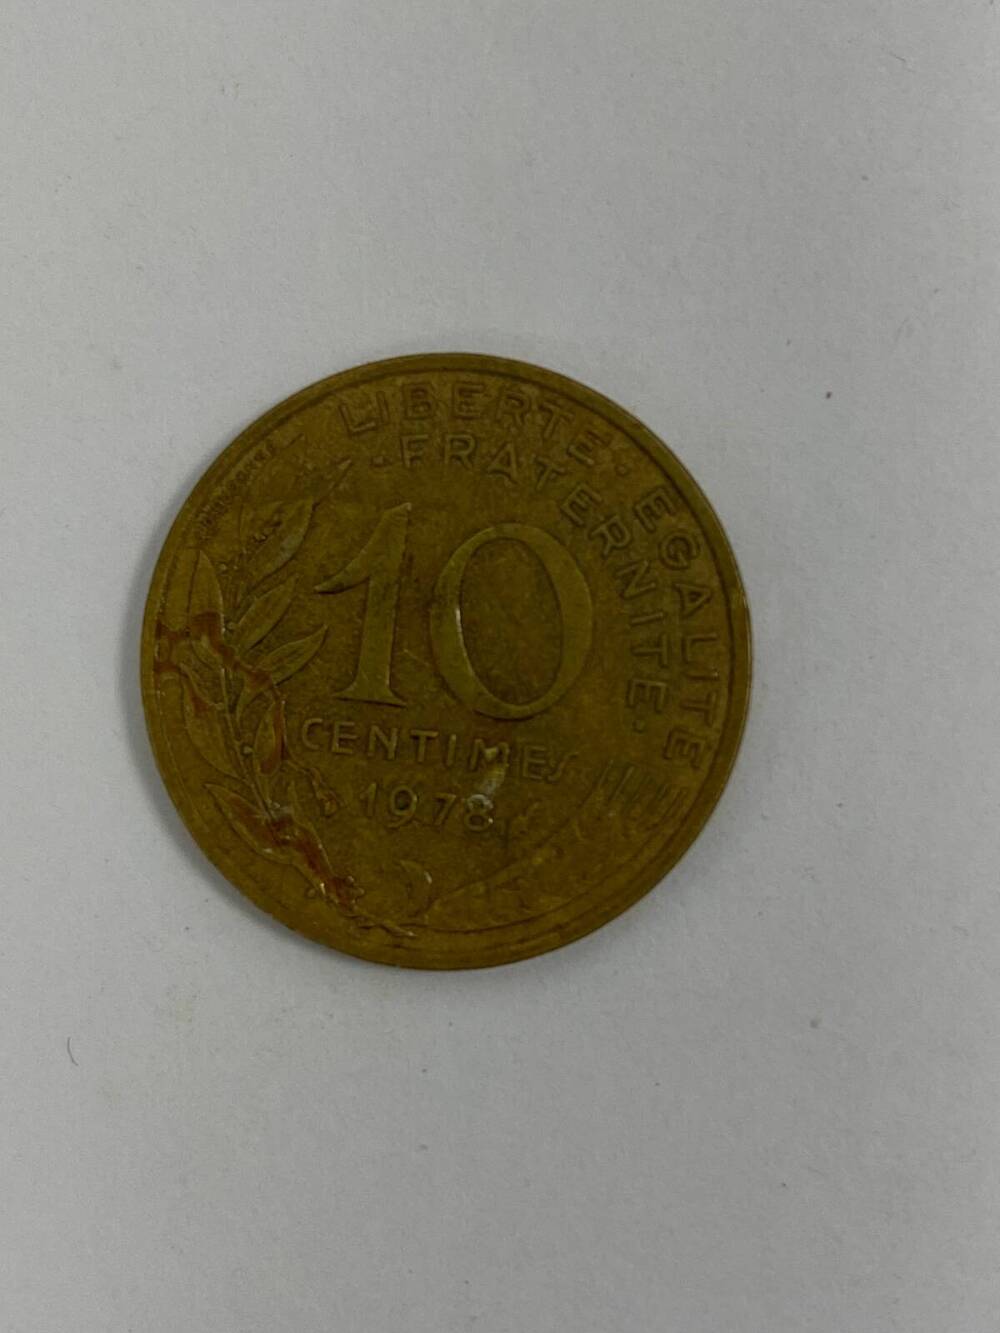 Монета французская, достоинством 10 1978 г. с изображением женского профиля.